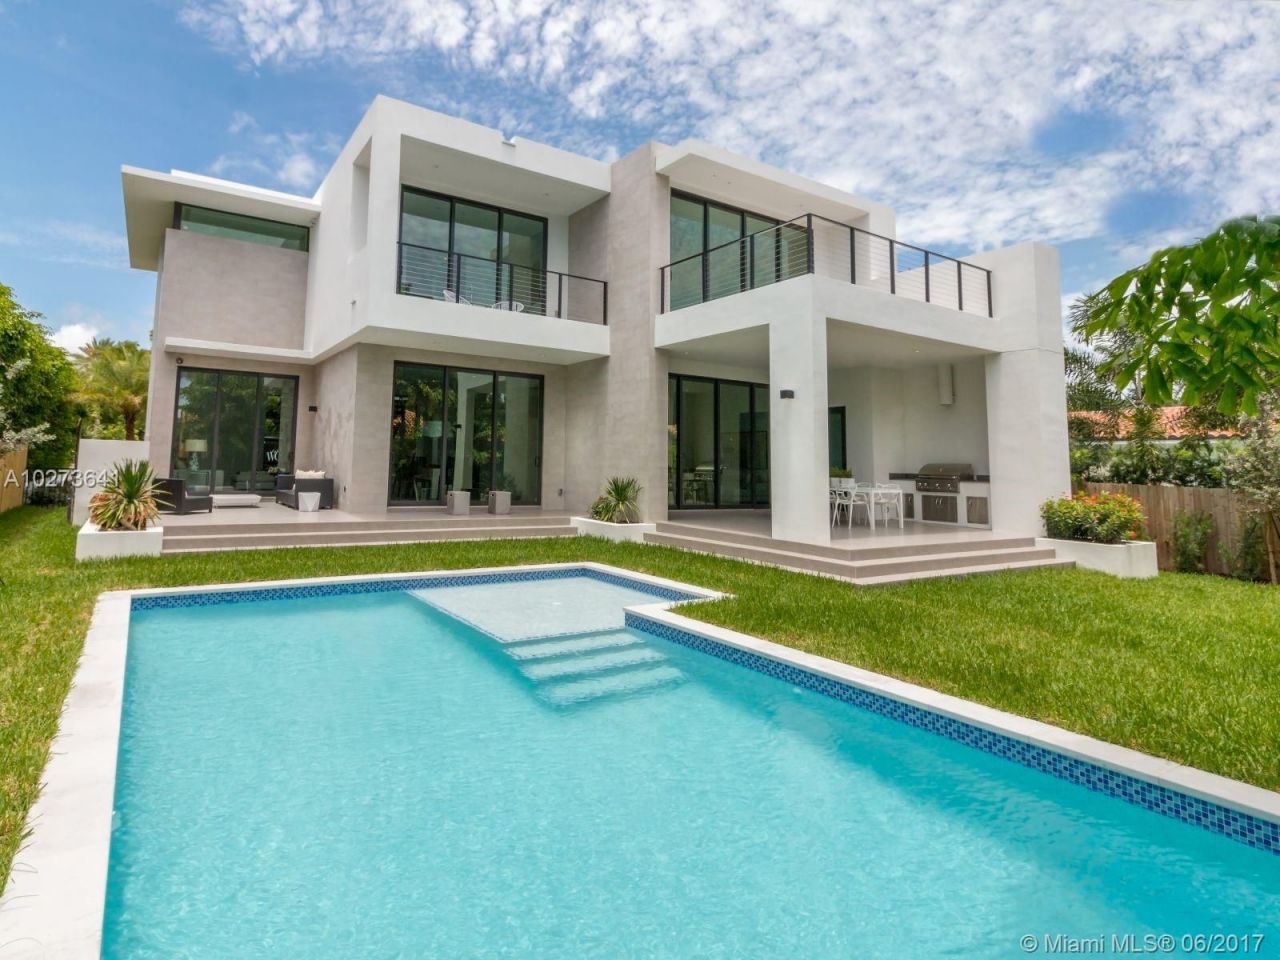 Casa en Miami, Estados Unidos, 400 m2 - imagen 1